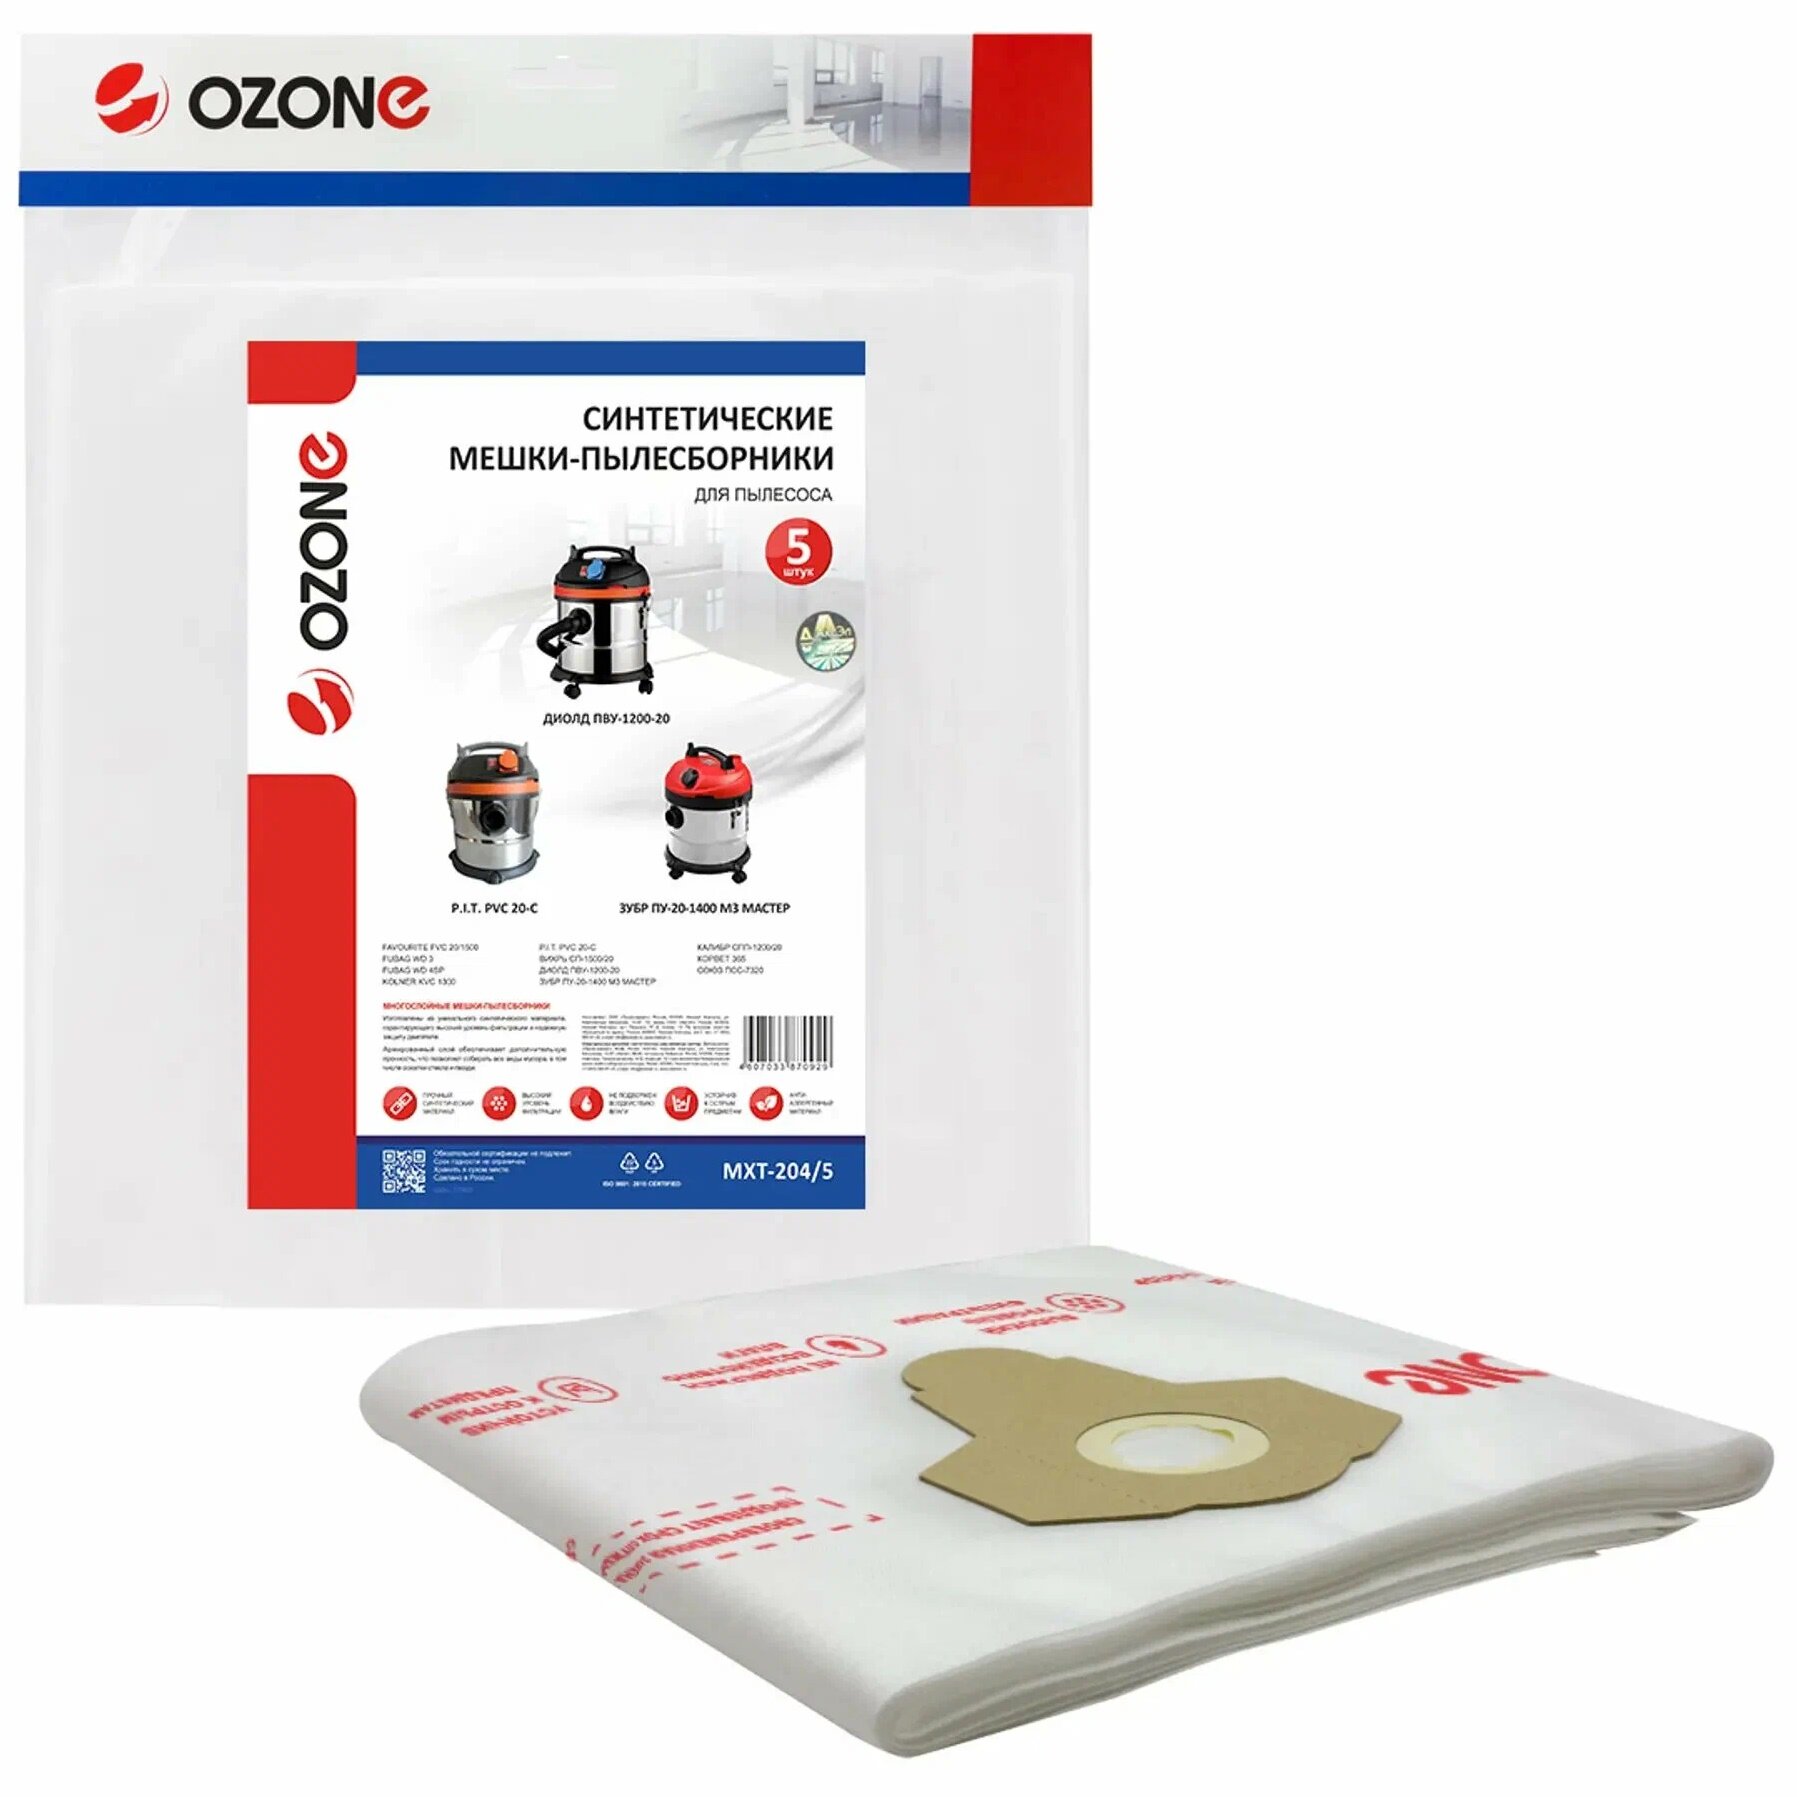 OZONE MXT-204/5 синтетический мешок-пылесборник для профессиональных пылесосов 5 шт.